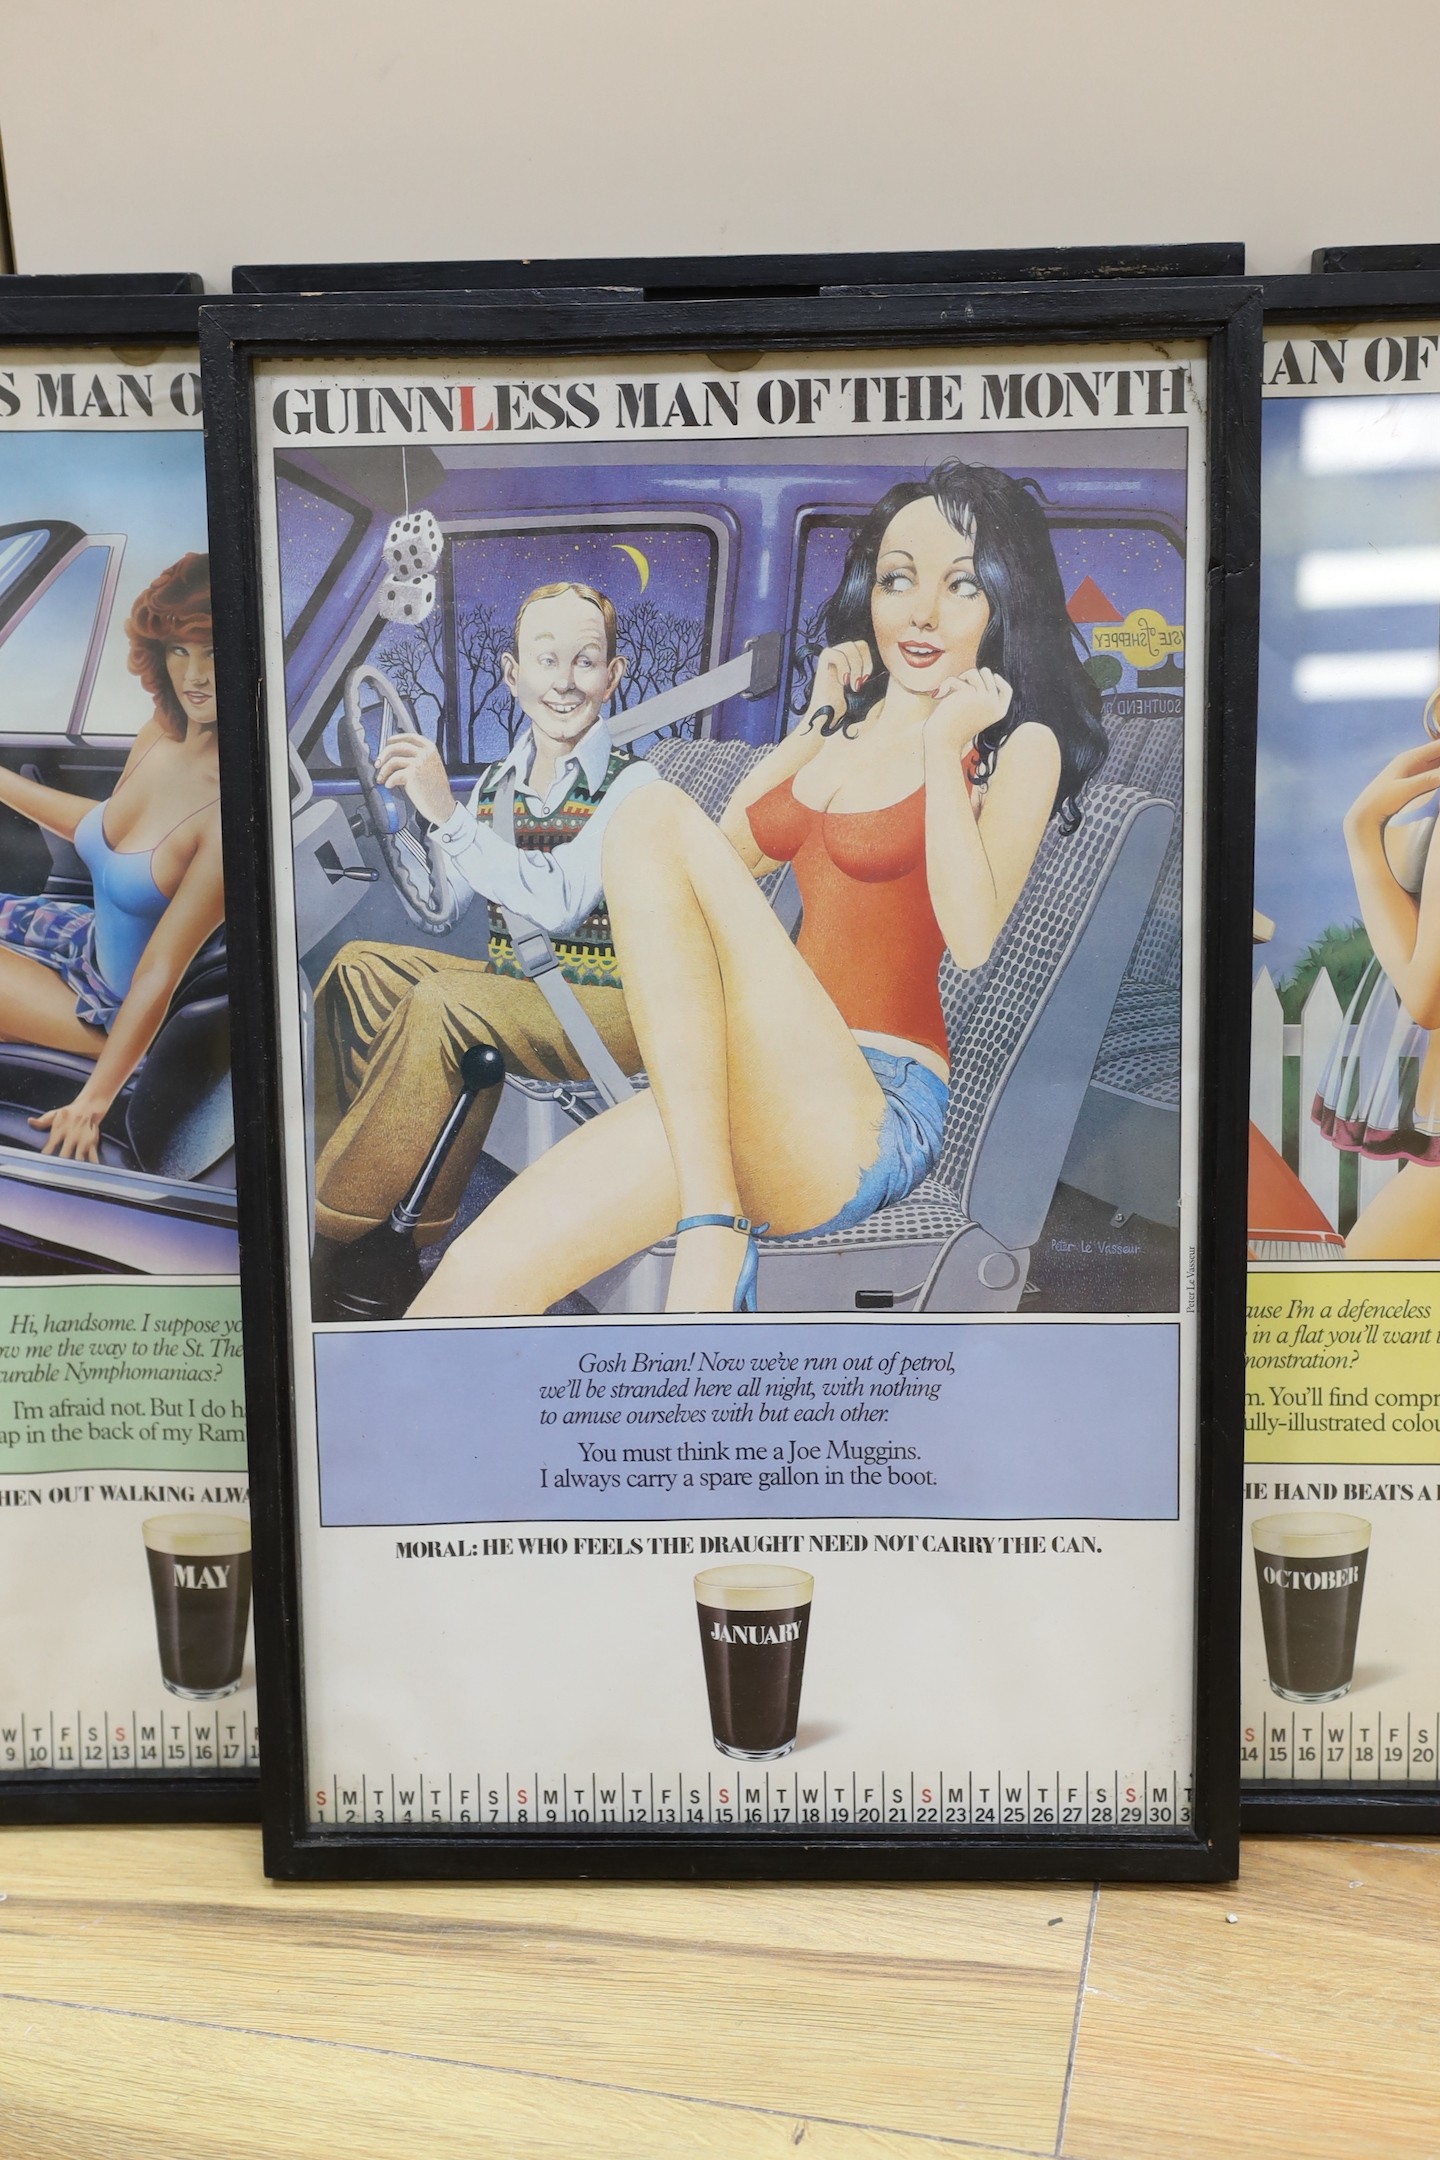 Guinness Advertising - 11 framed Guinnless man of the Month posters